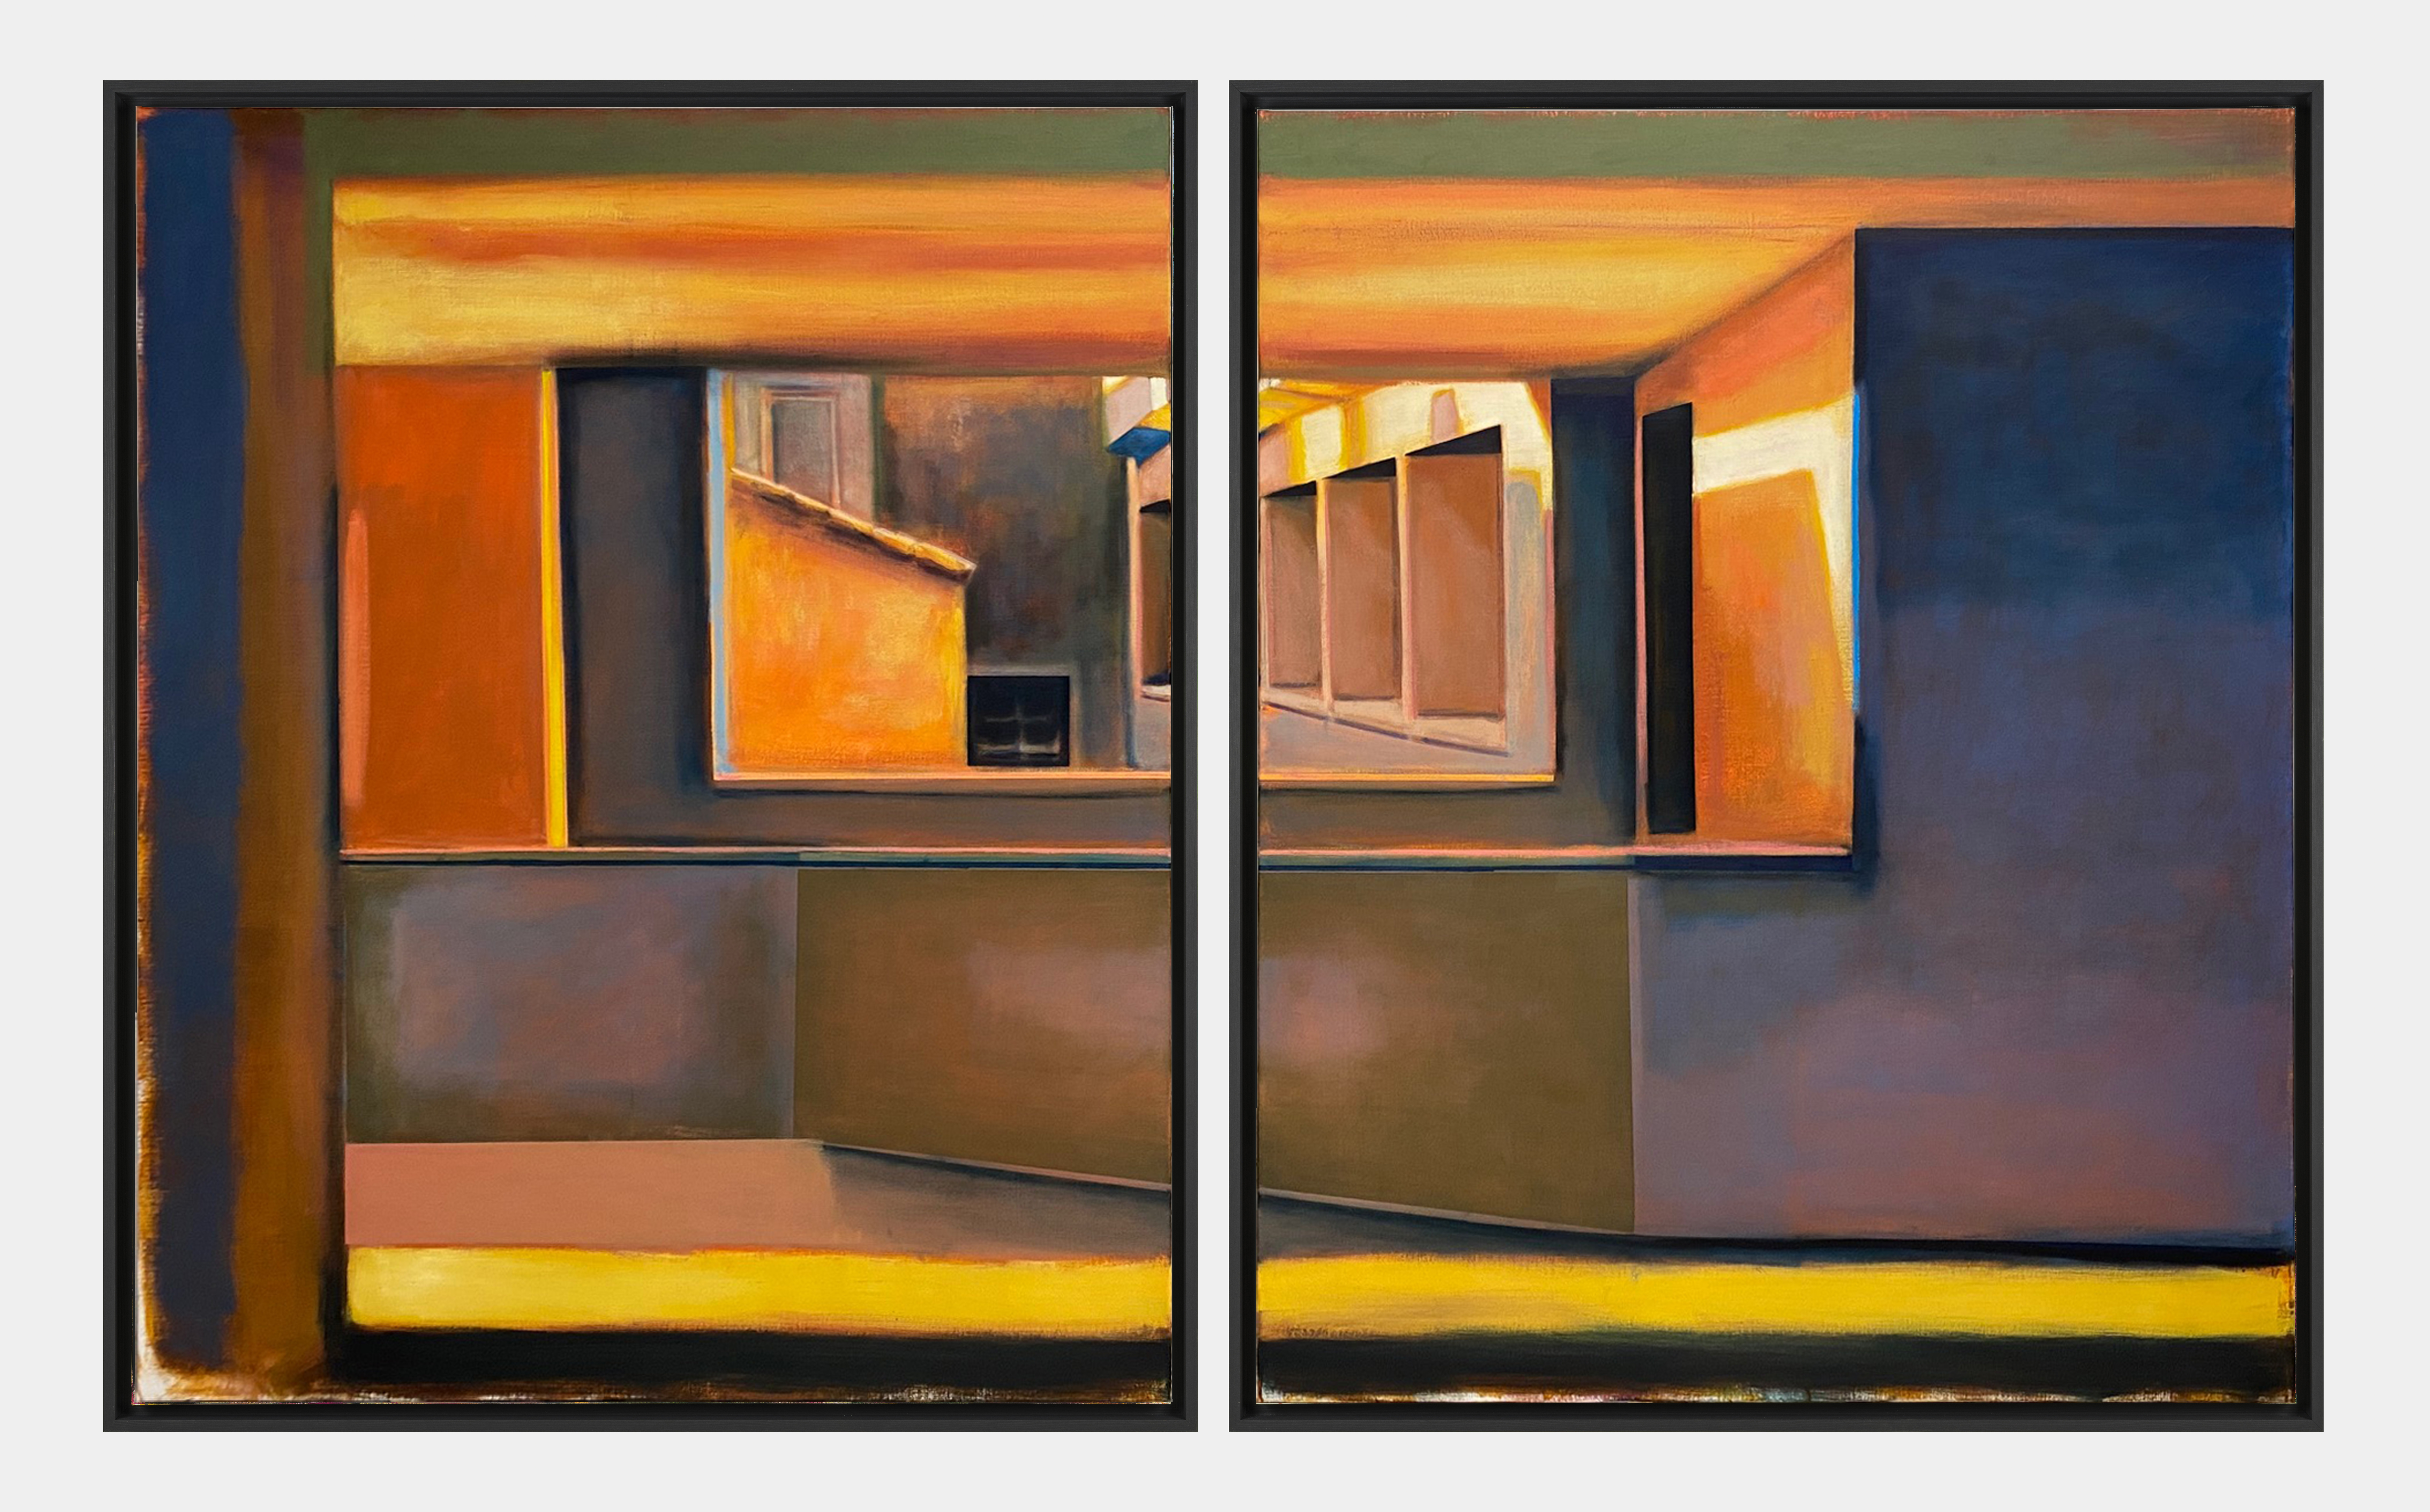 Jérémy LIRON,
Paysage 260, 2023-2024
Huile sur toile, 162 x 130 cm x 2 (diptyque) 
Courtesy: Galerie 